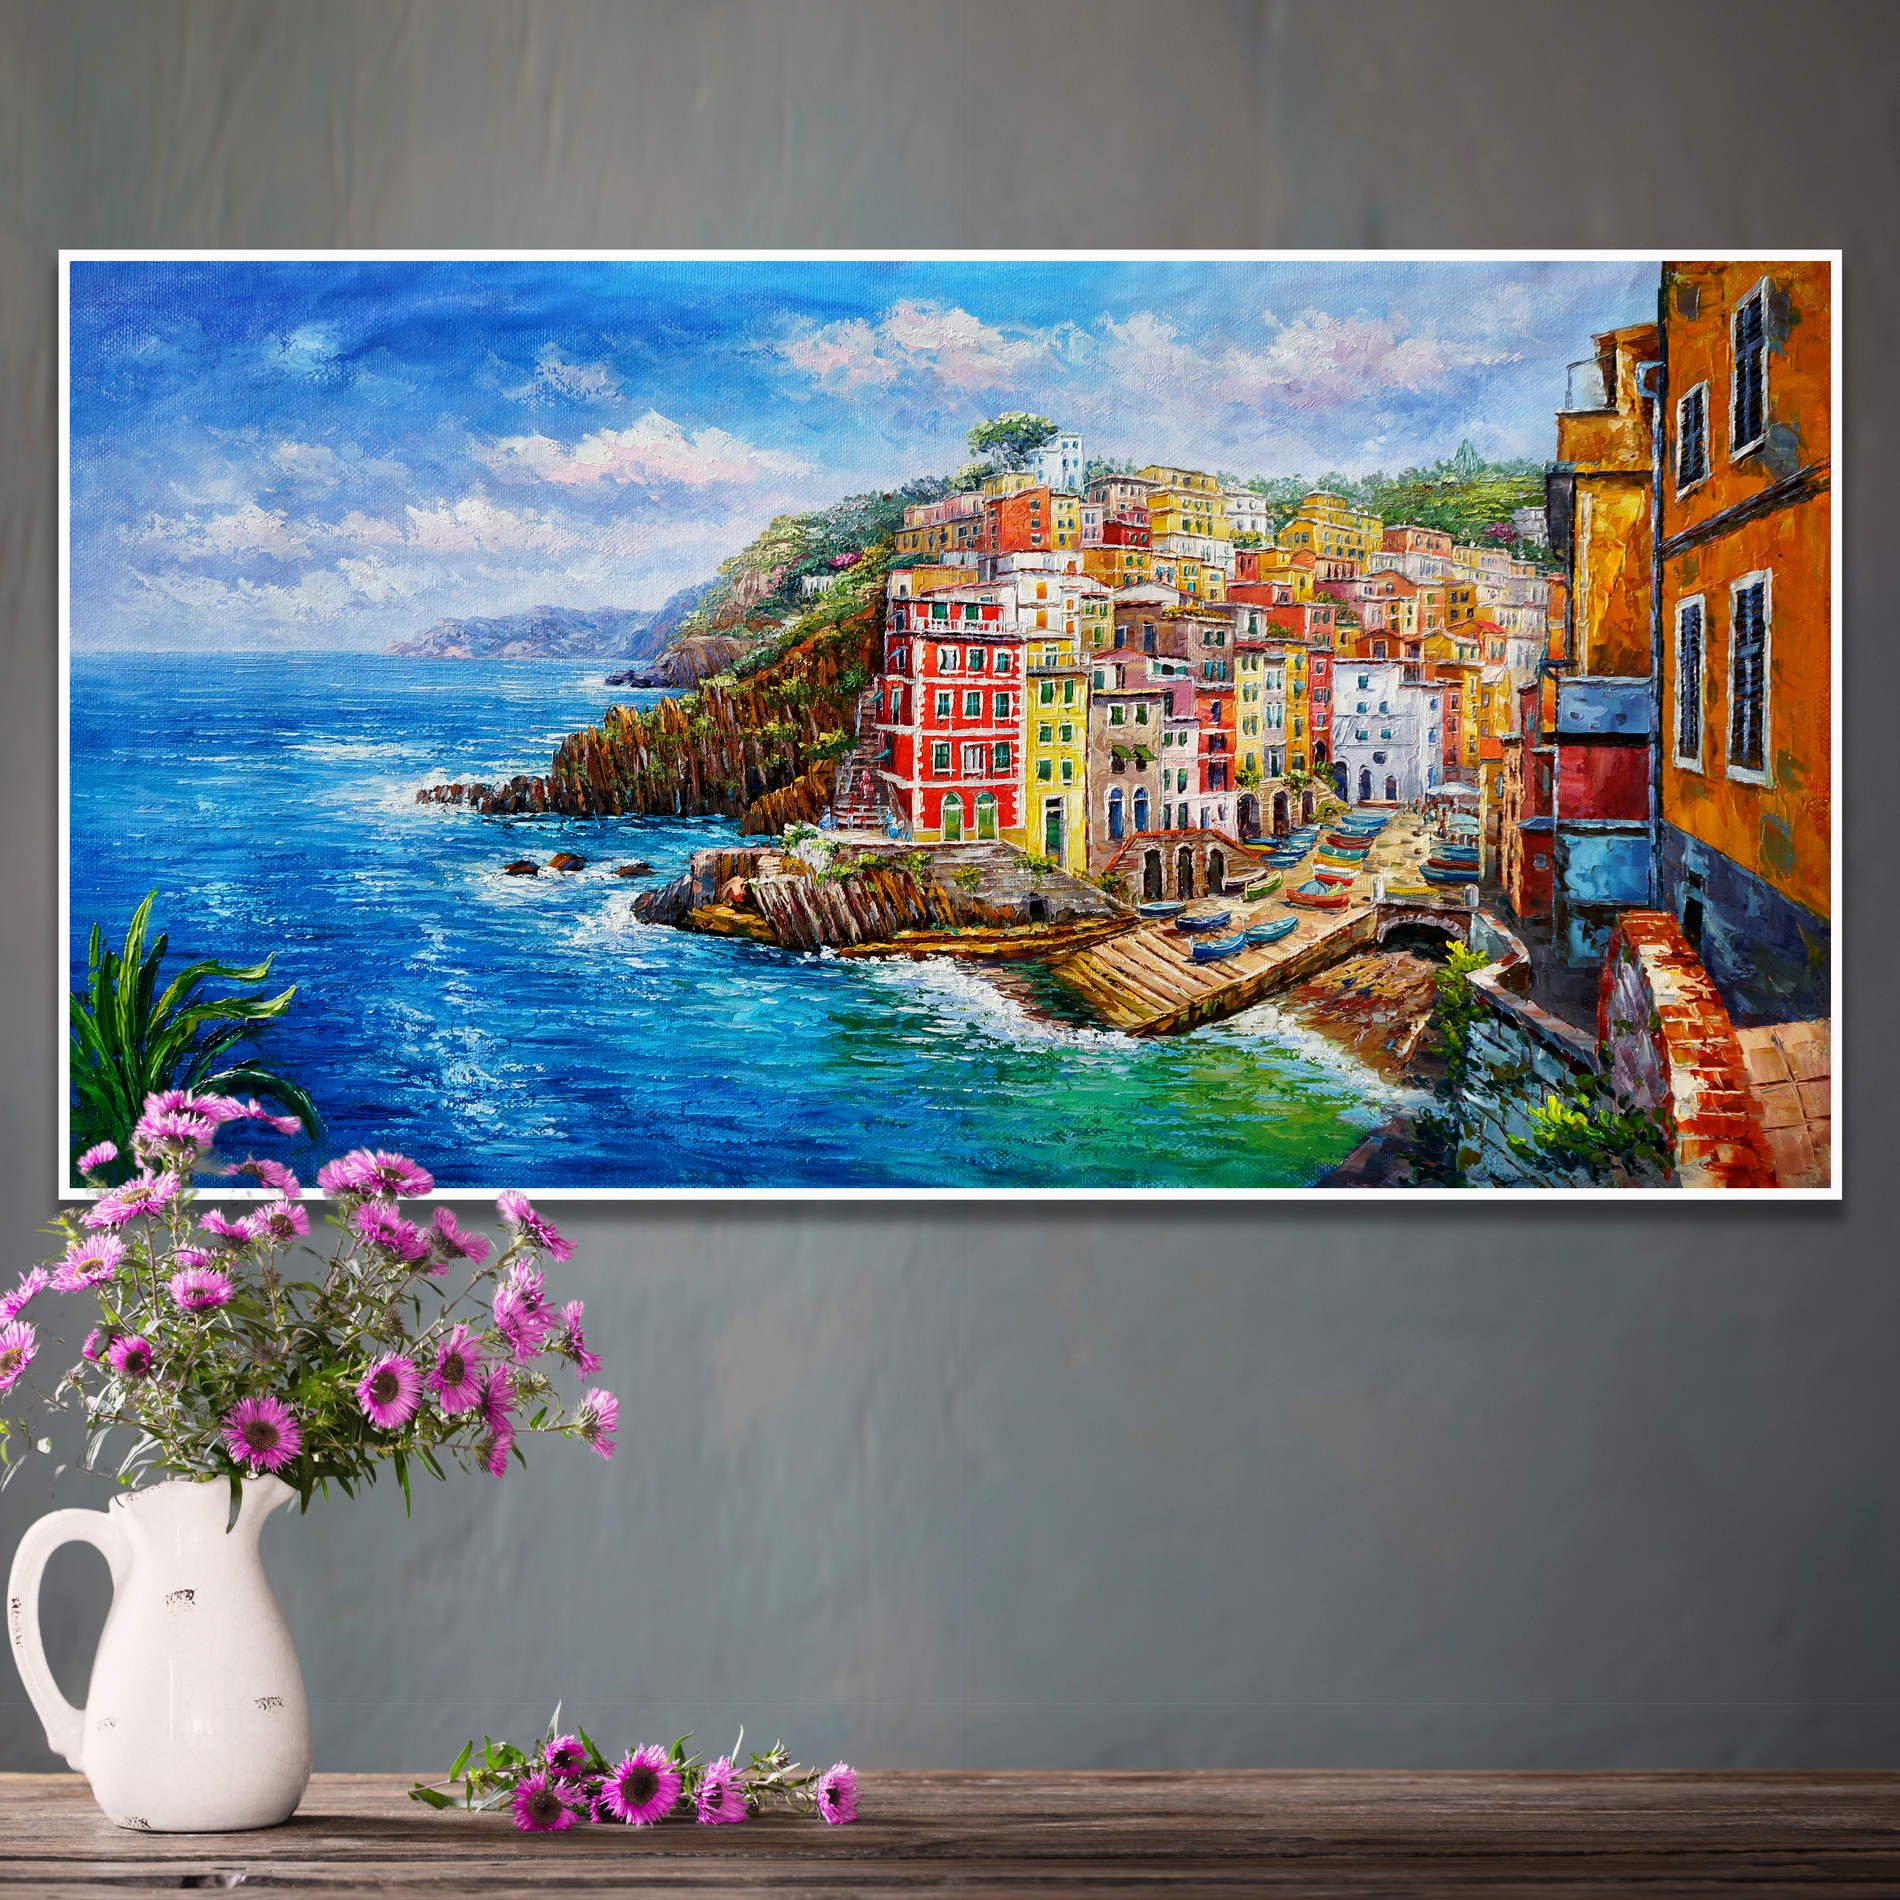 Dipinto del borgo di Riomaggiore nelle Cinque Terre con case le sue colorate